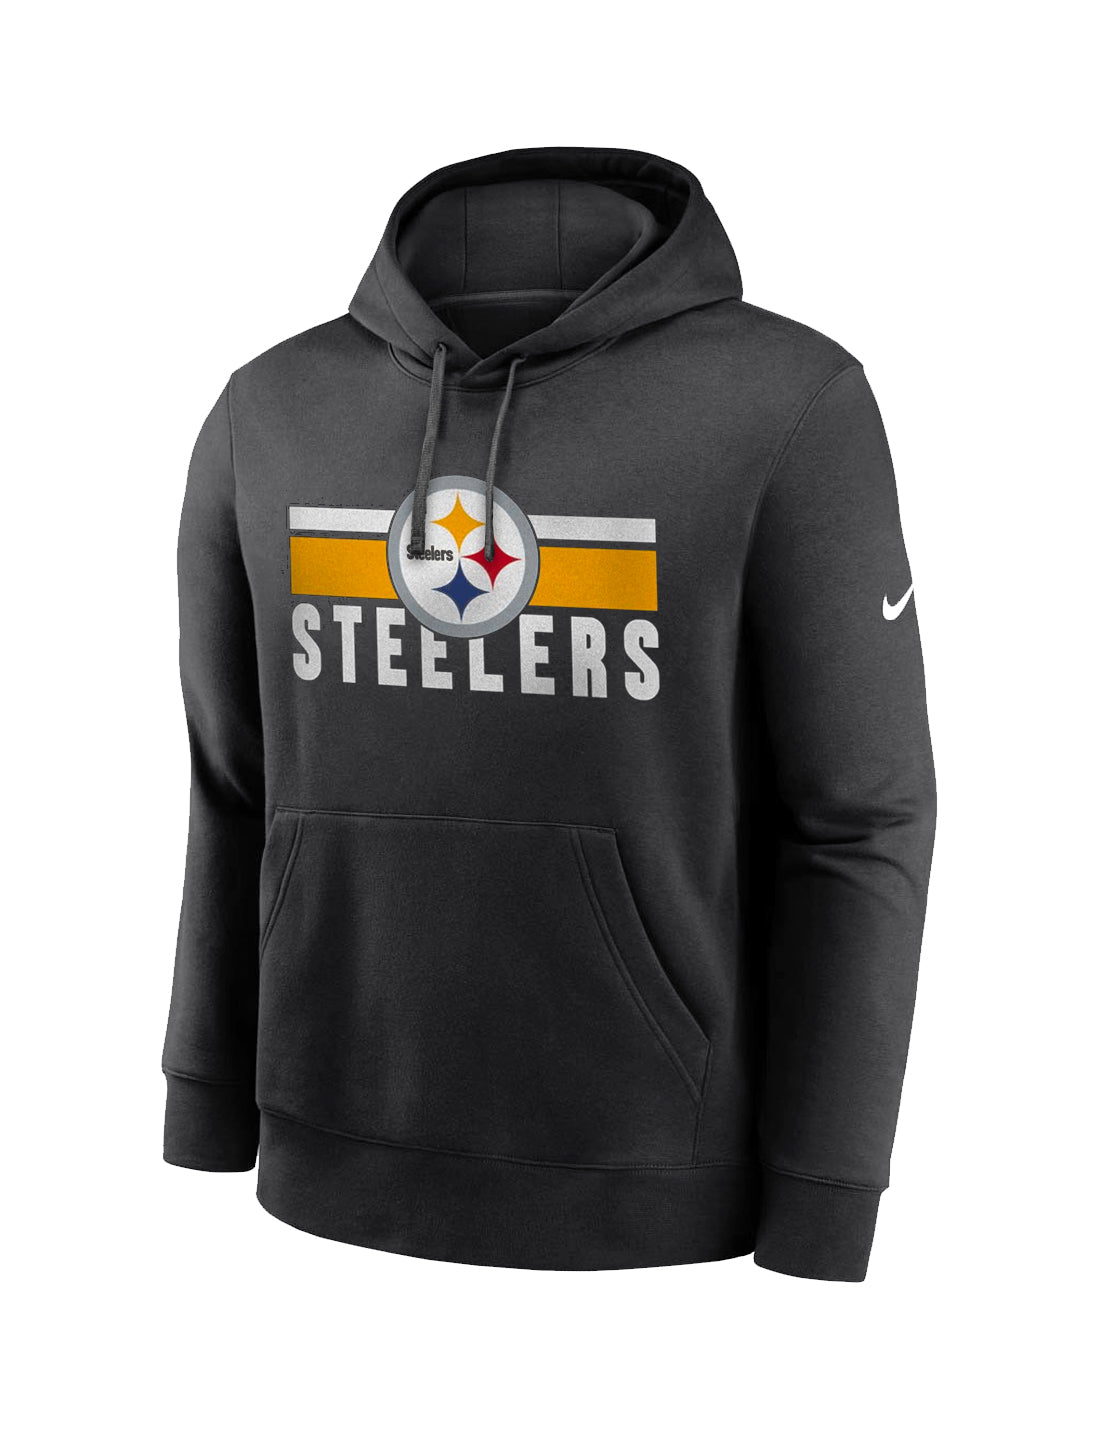 Pittsburgh Steelers Nike NFL Team Stripes Hoodie Jumper - Black